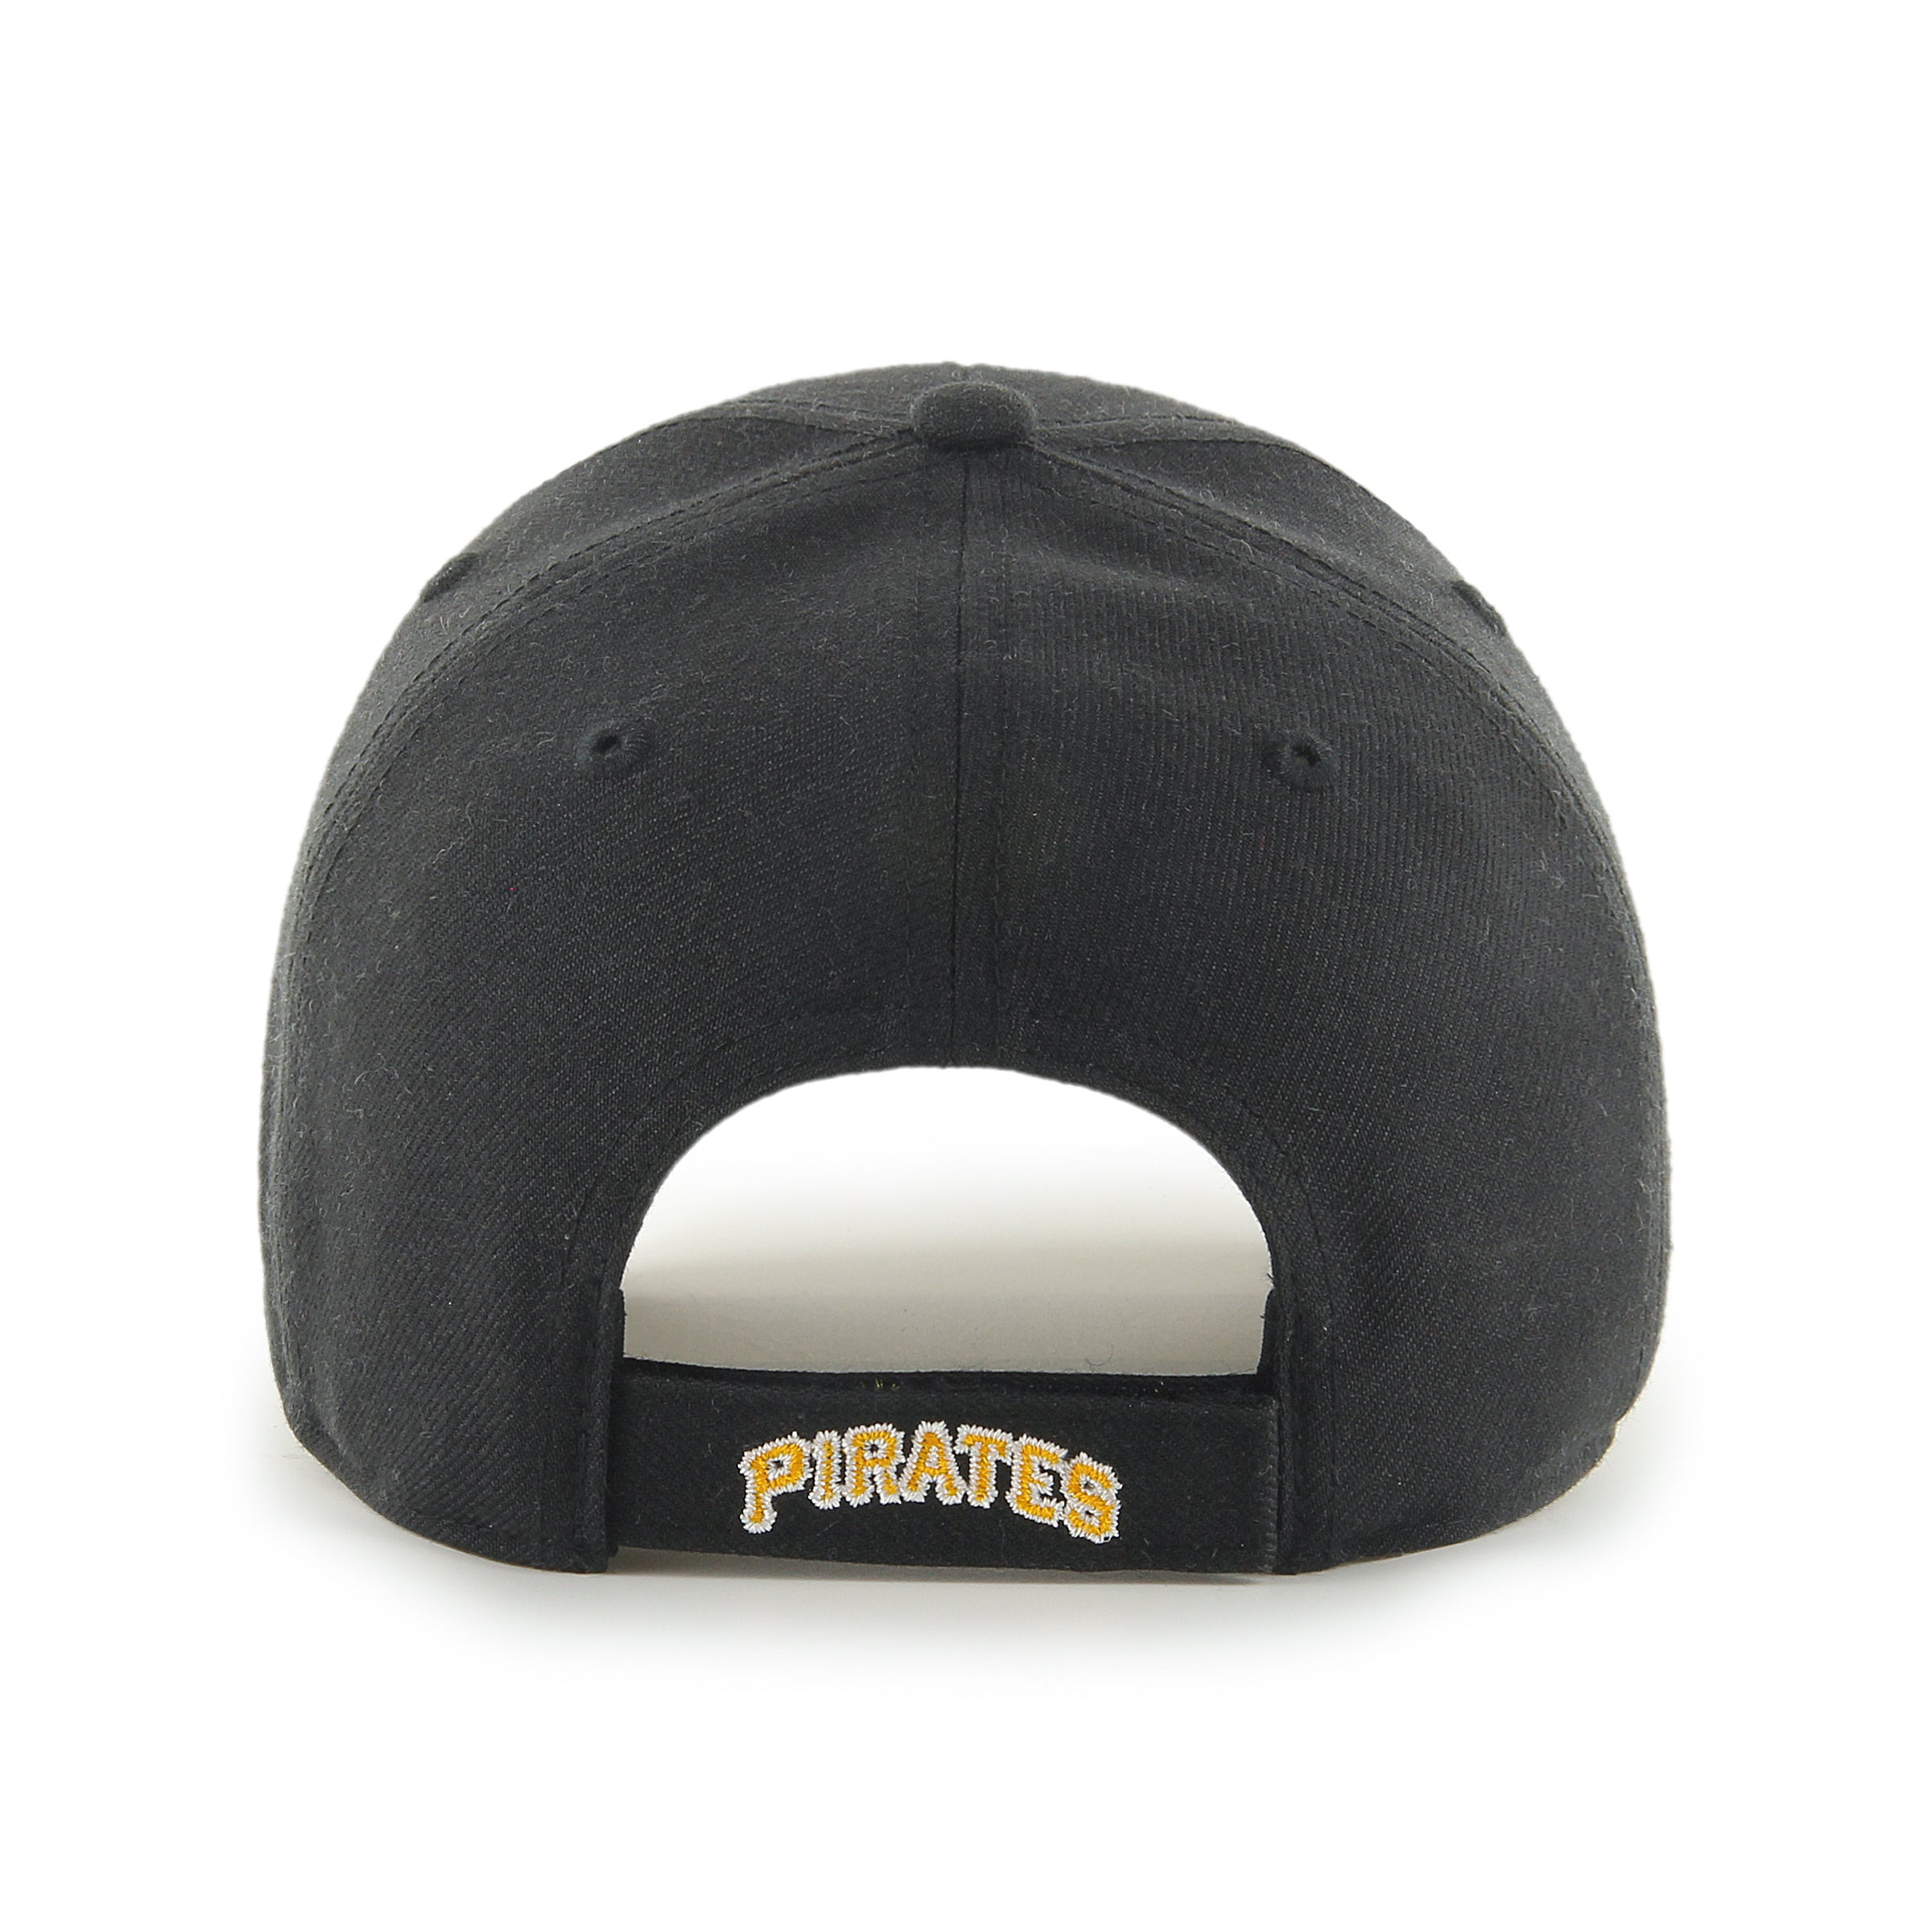 : Pittsburgh Pirates MVP Adjustable Cap : Baseball Caps